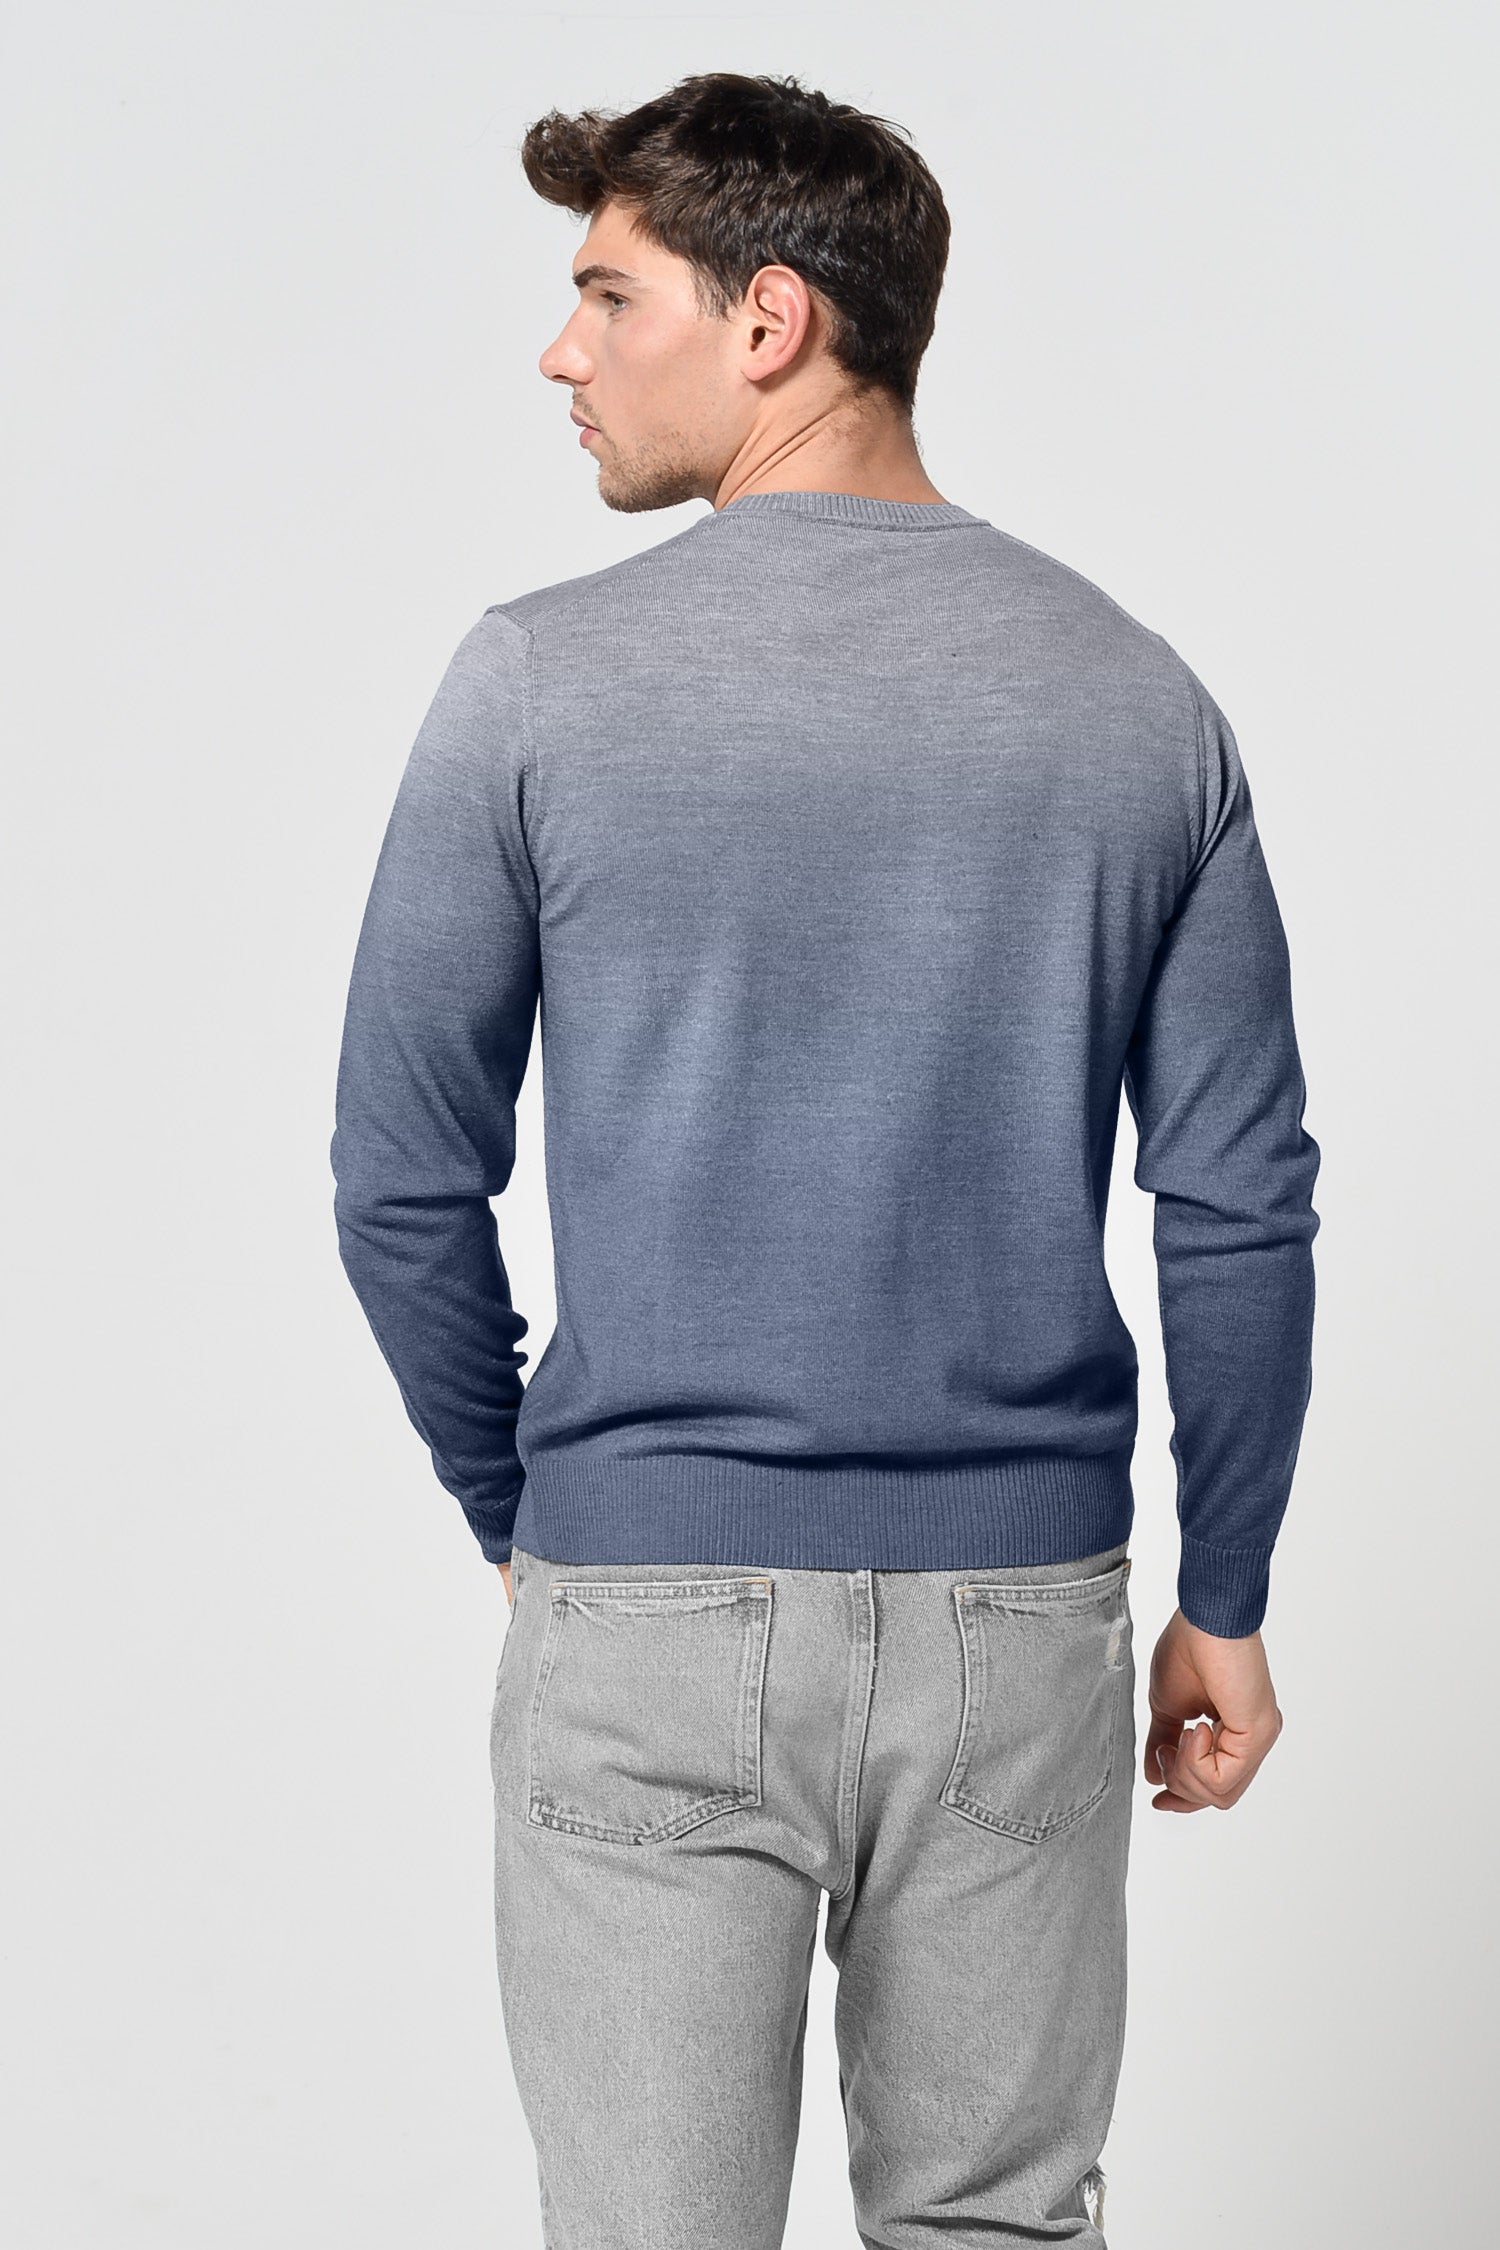 Gills Gradient Sweater - Navy